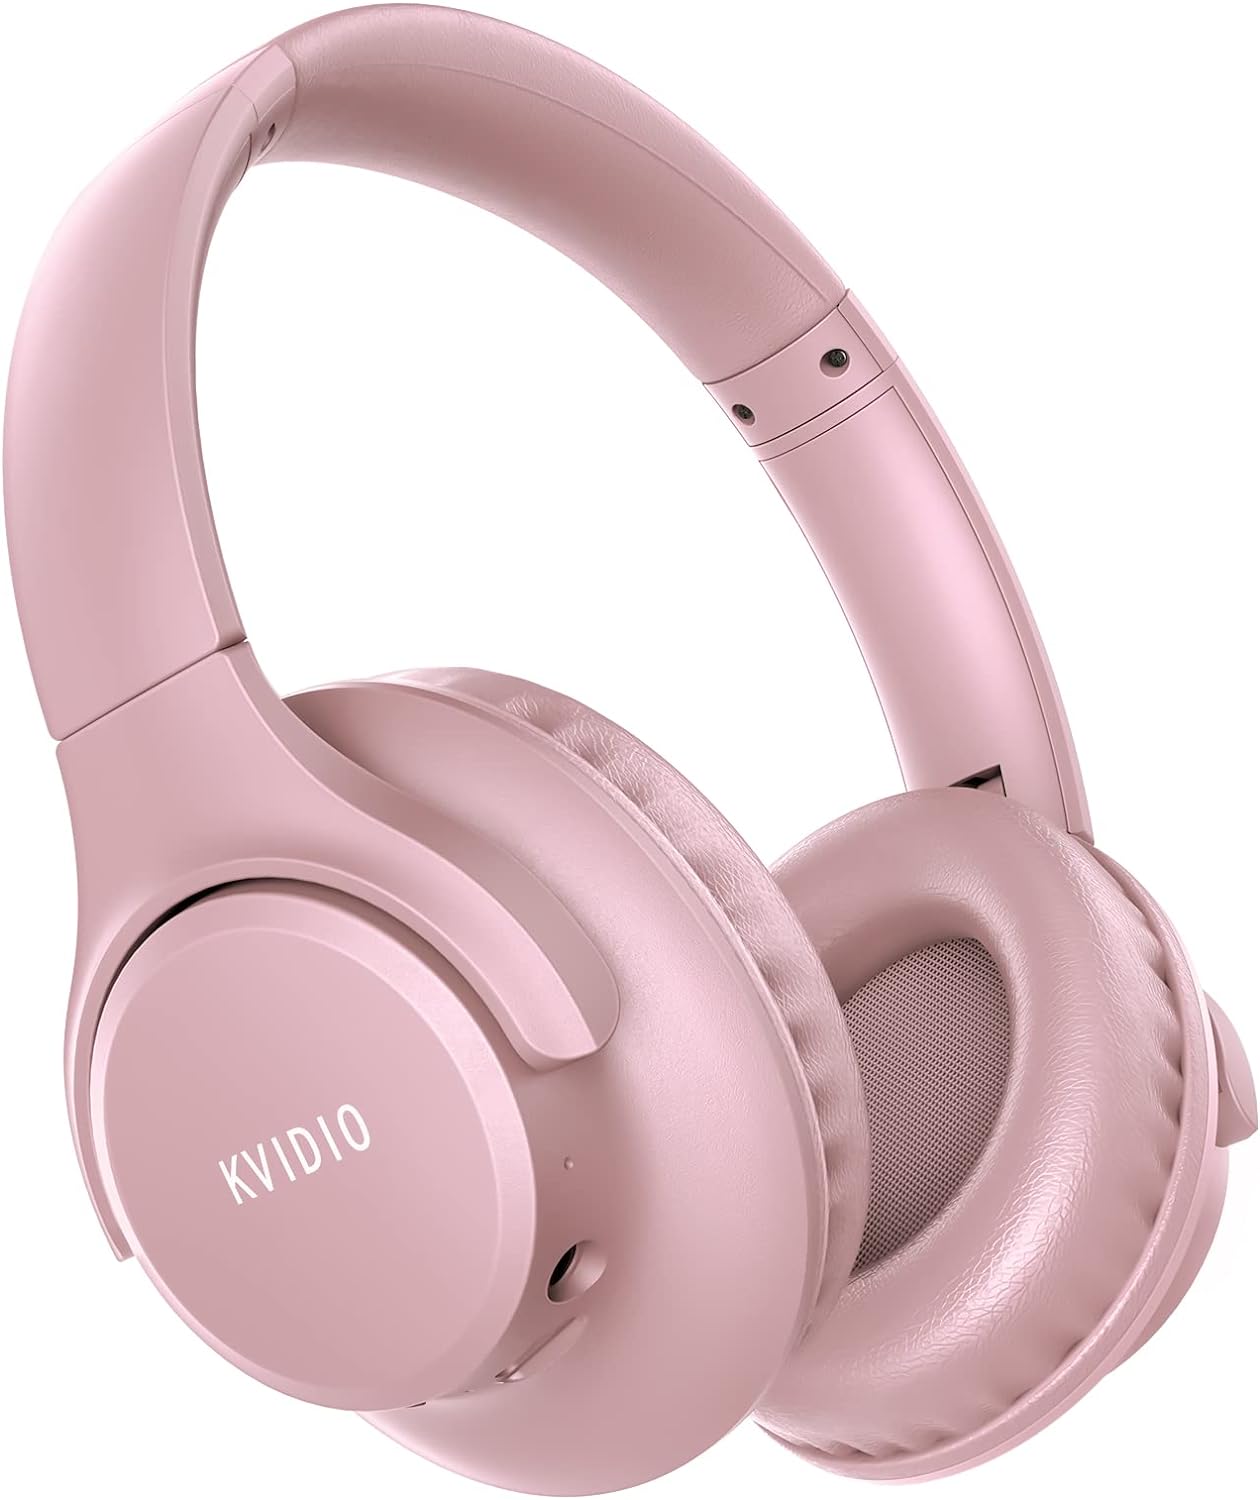 KVIDIO Bluetooth Headphones Over Ear